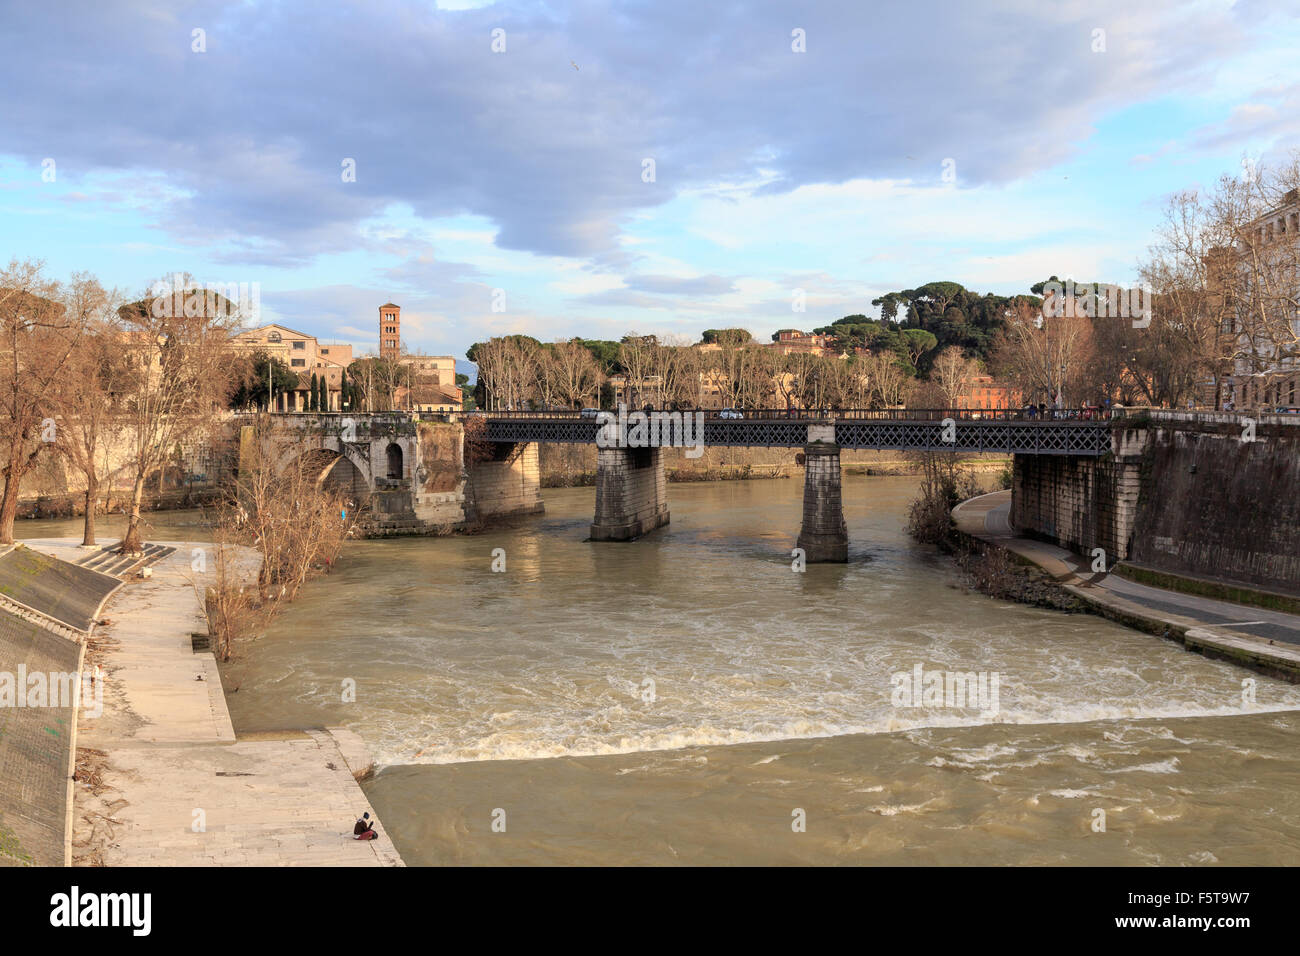 Paesaggio urbano storico lungo il Tevere a Roma, Italia. Foto Stock